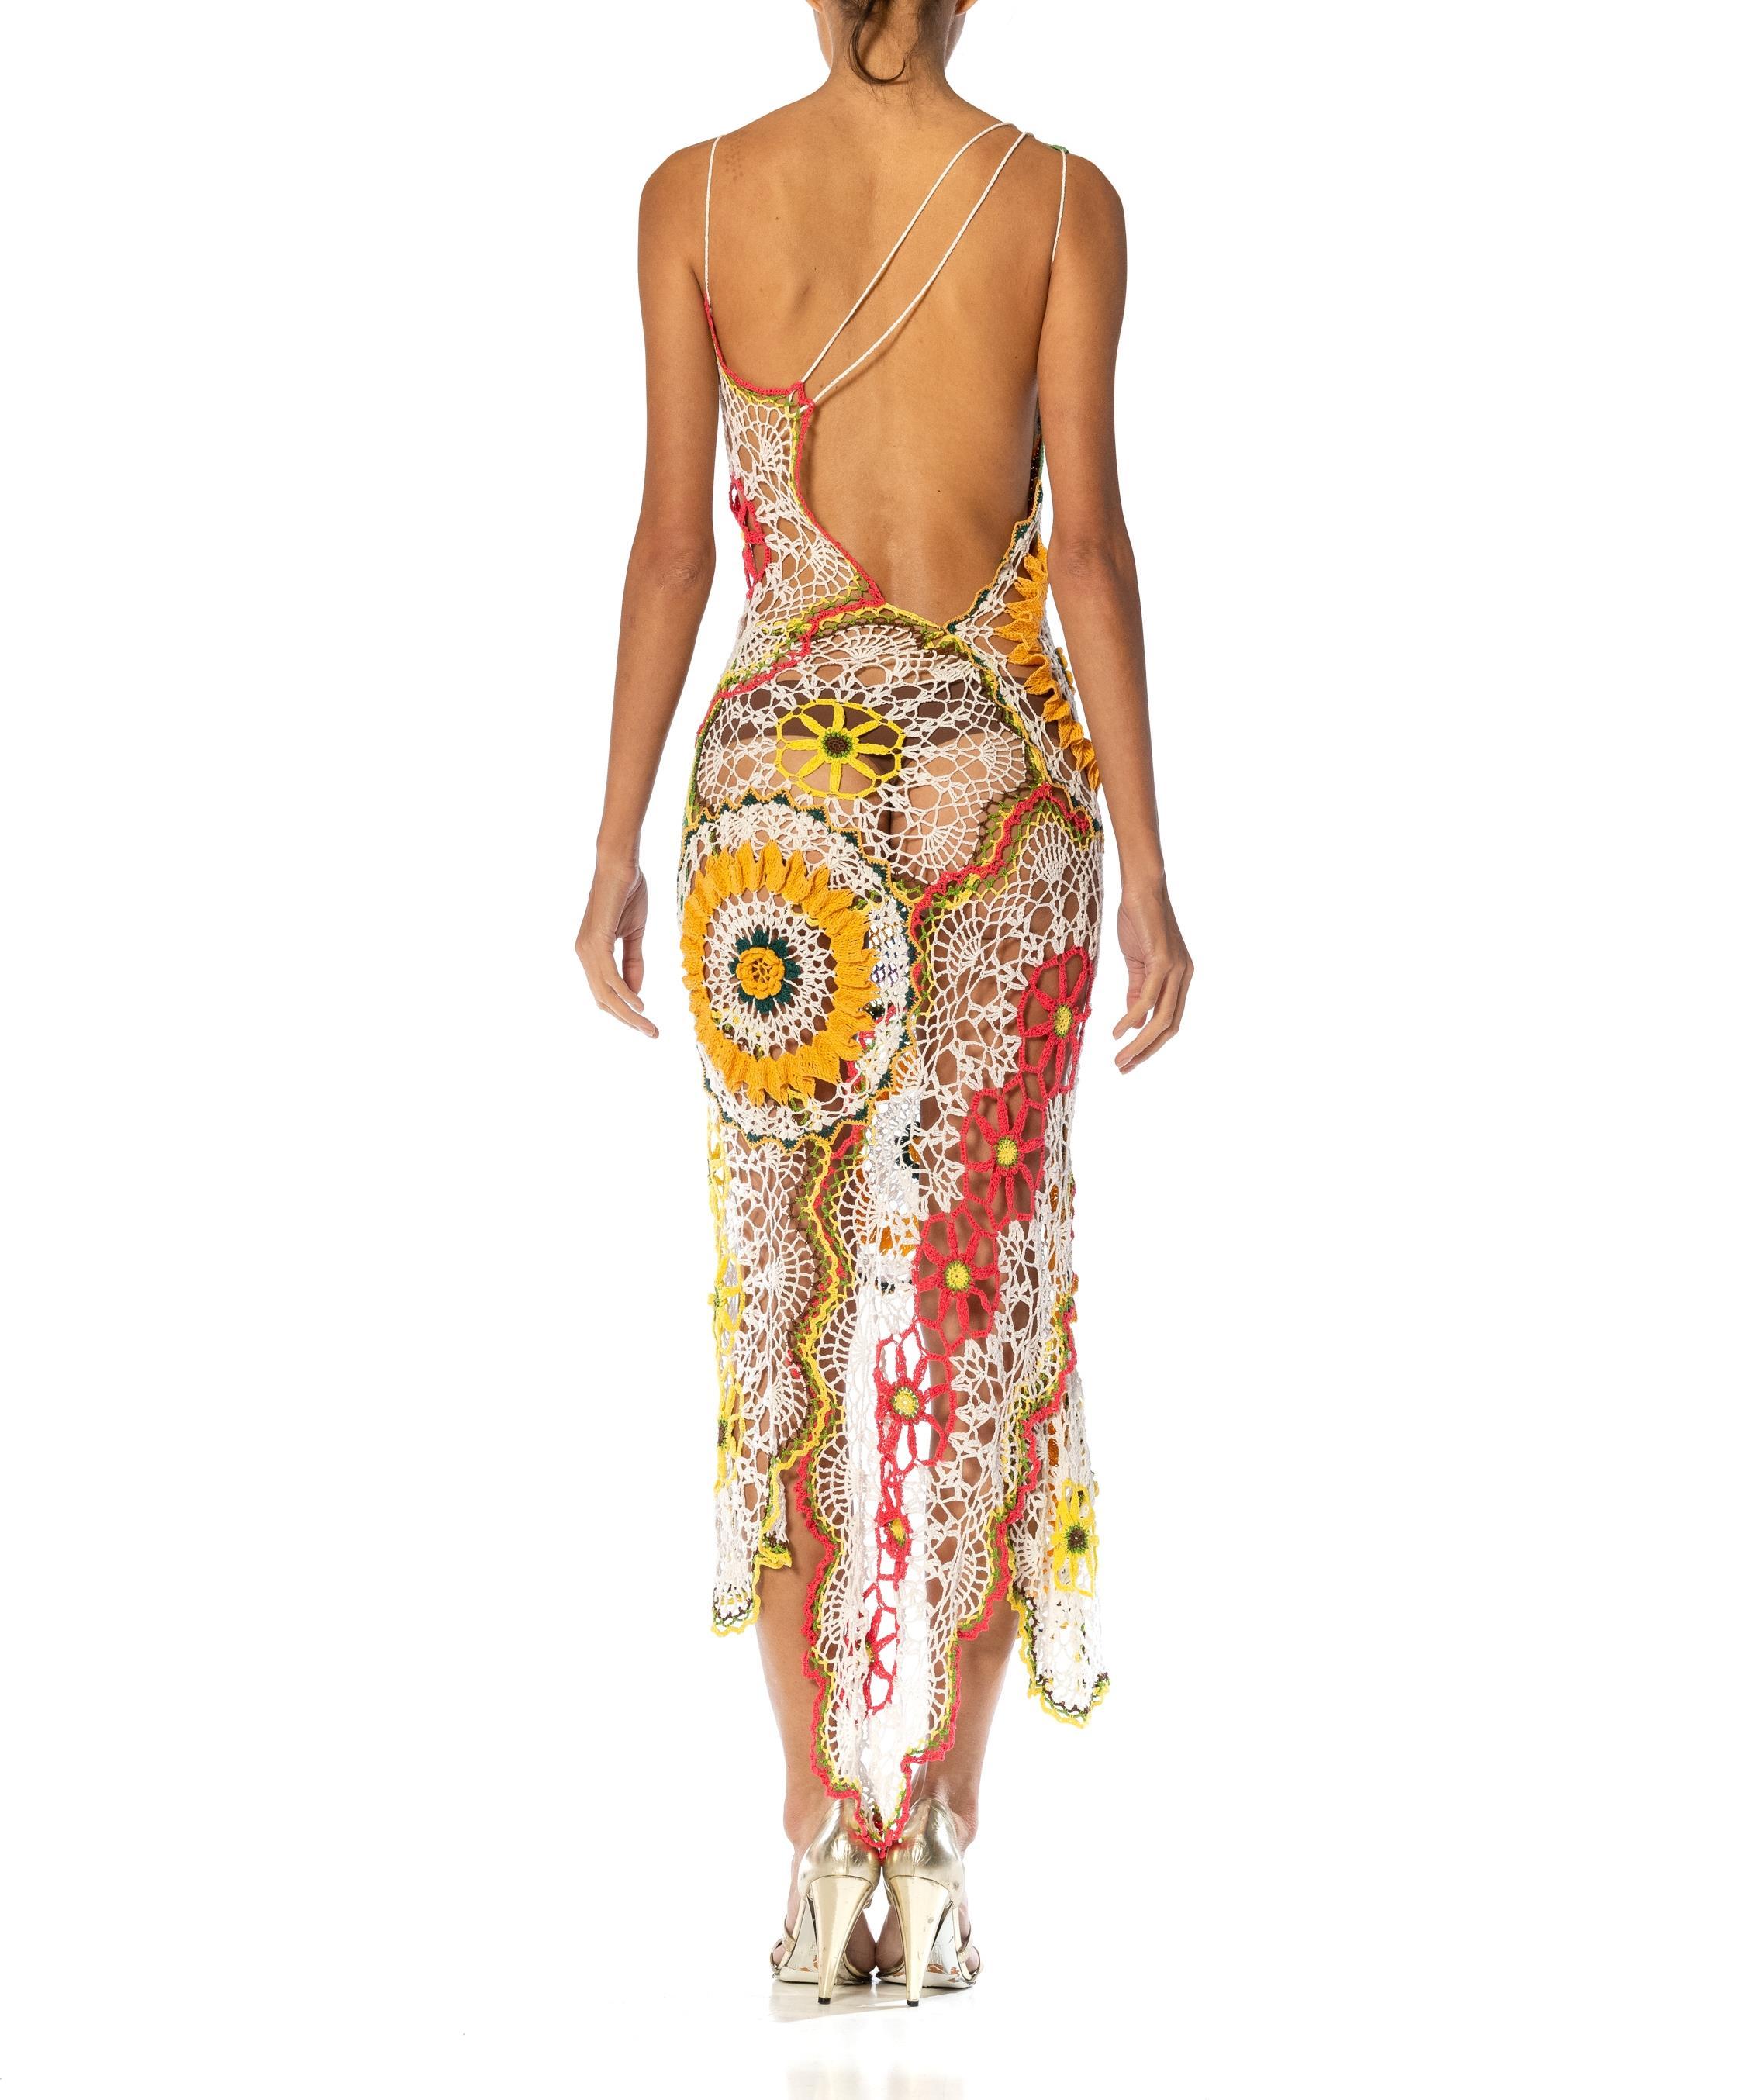 MORPHEW COLLECTION Multicolor Cotton Crochet Lace Dress For Sale 5